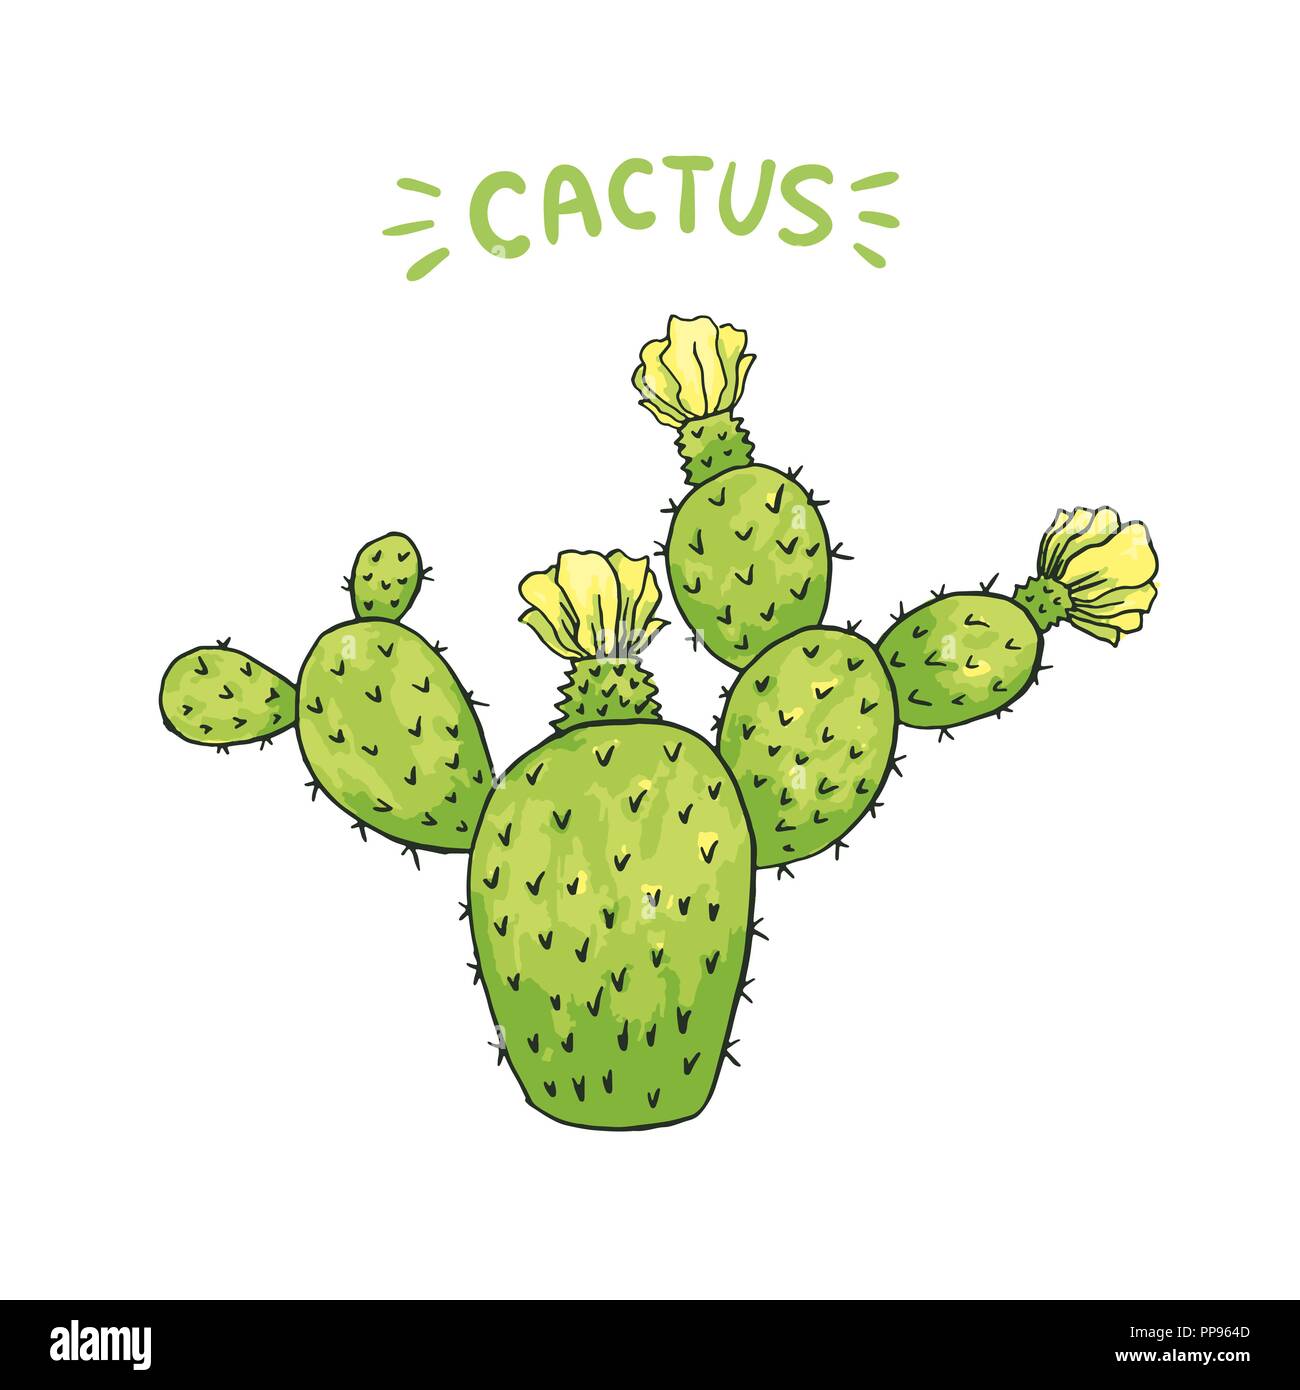 Mexikanischer Kaktus mit Stacheln oder Dornen und Blüten als isolierte Clipart für Cinco De Mayo Urlaub oder Feier. Genießbare Esculent wie Saguaro Kakteen, indische Abb. oder Mammillaria. Latin theme Stock Vektor